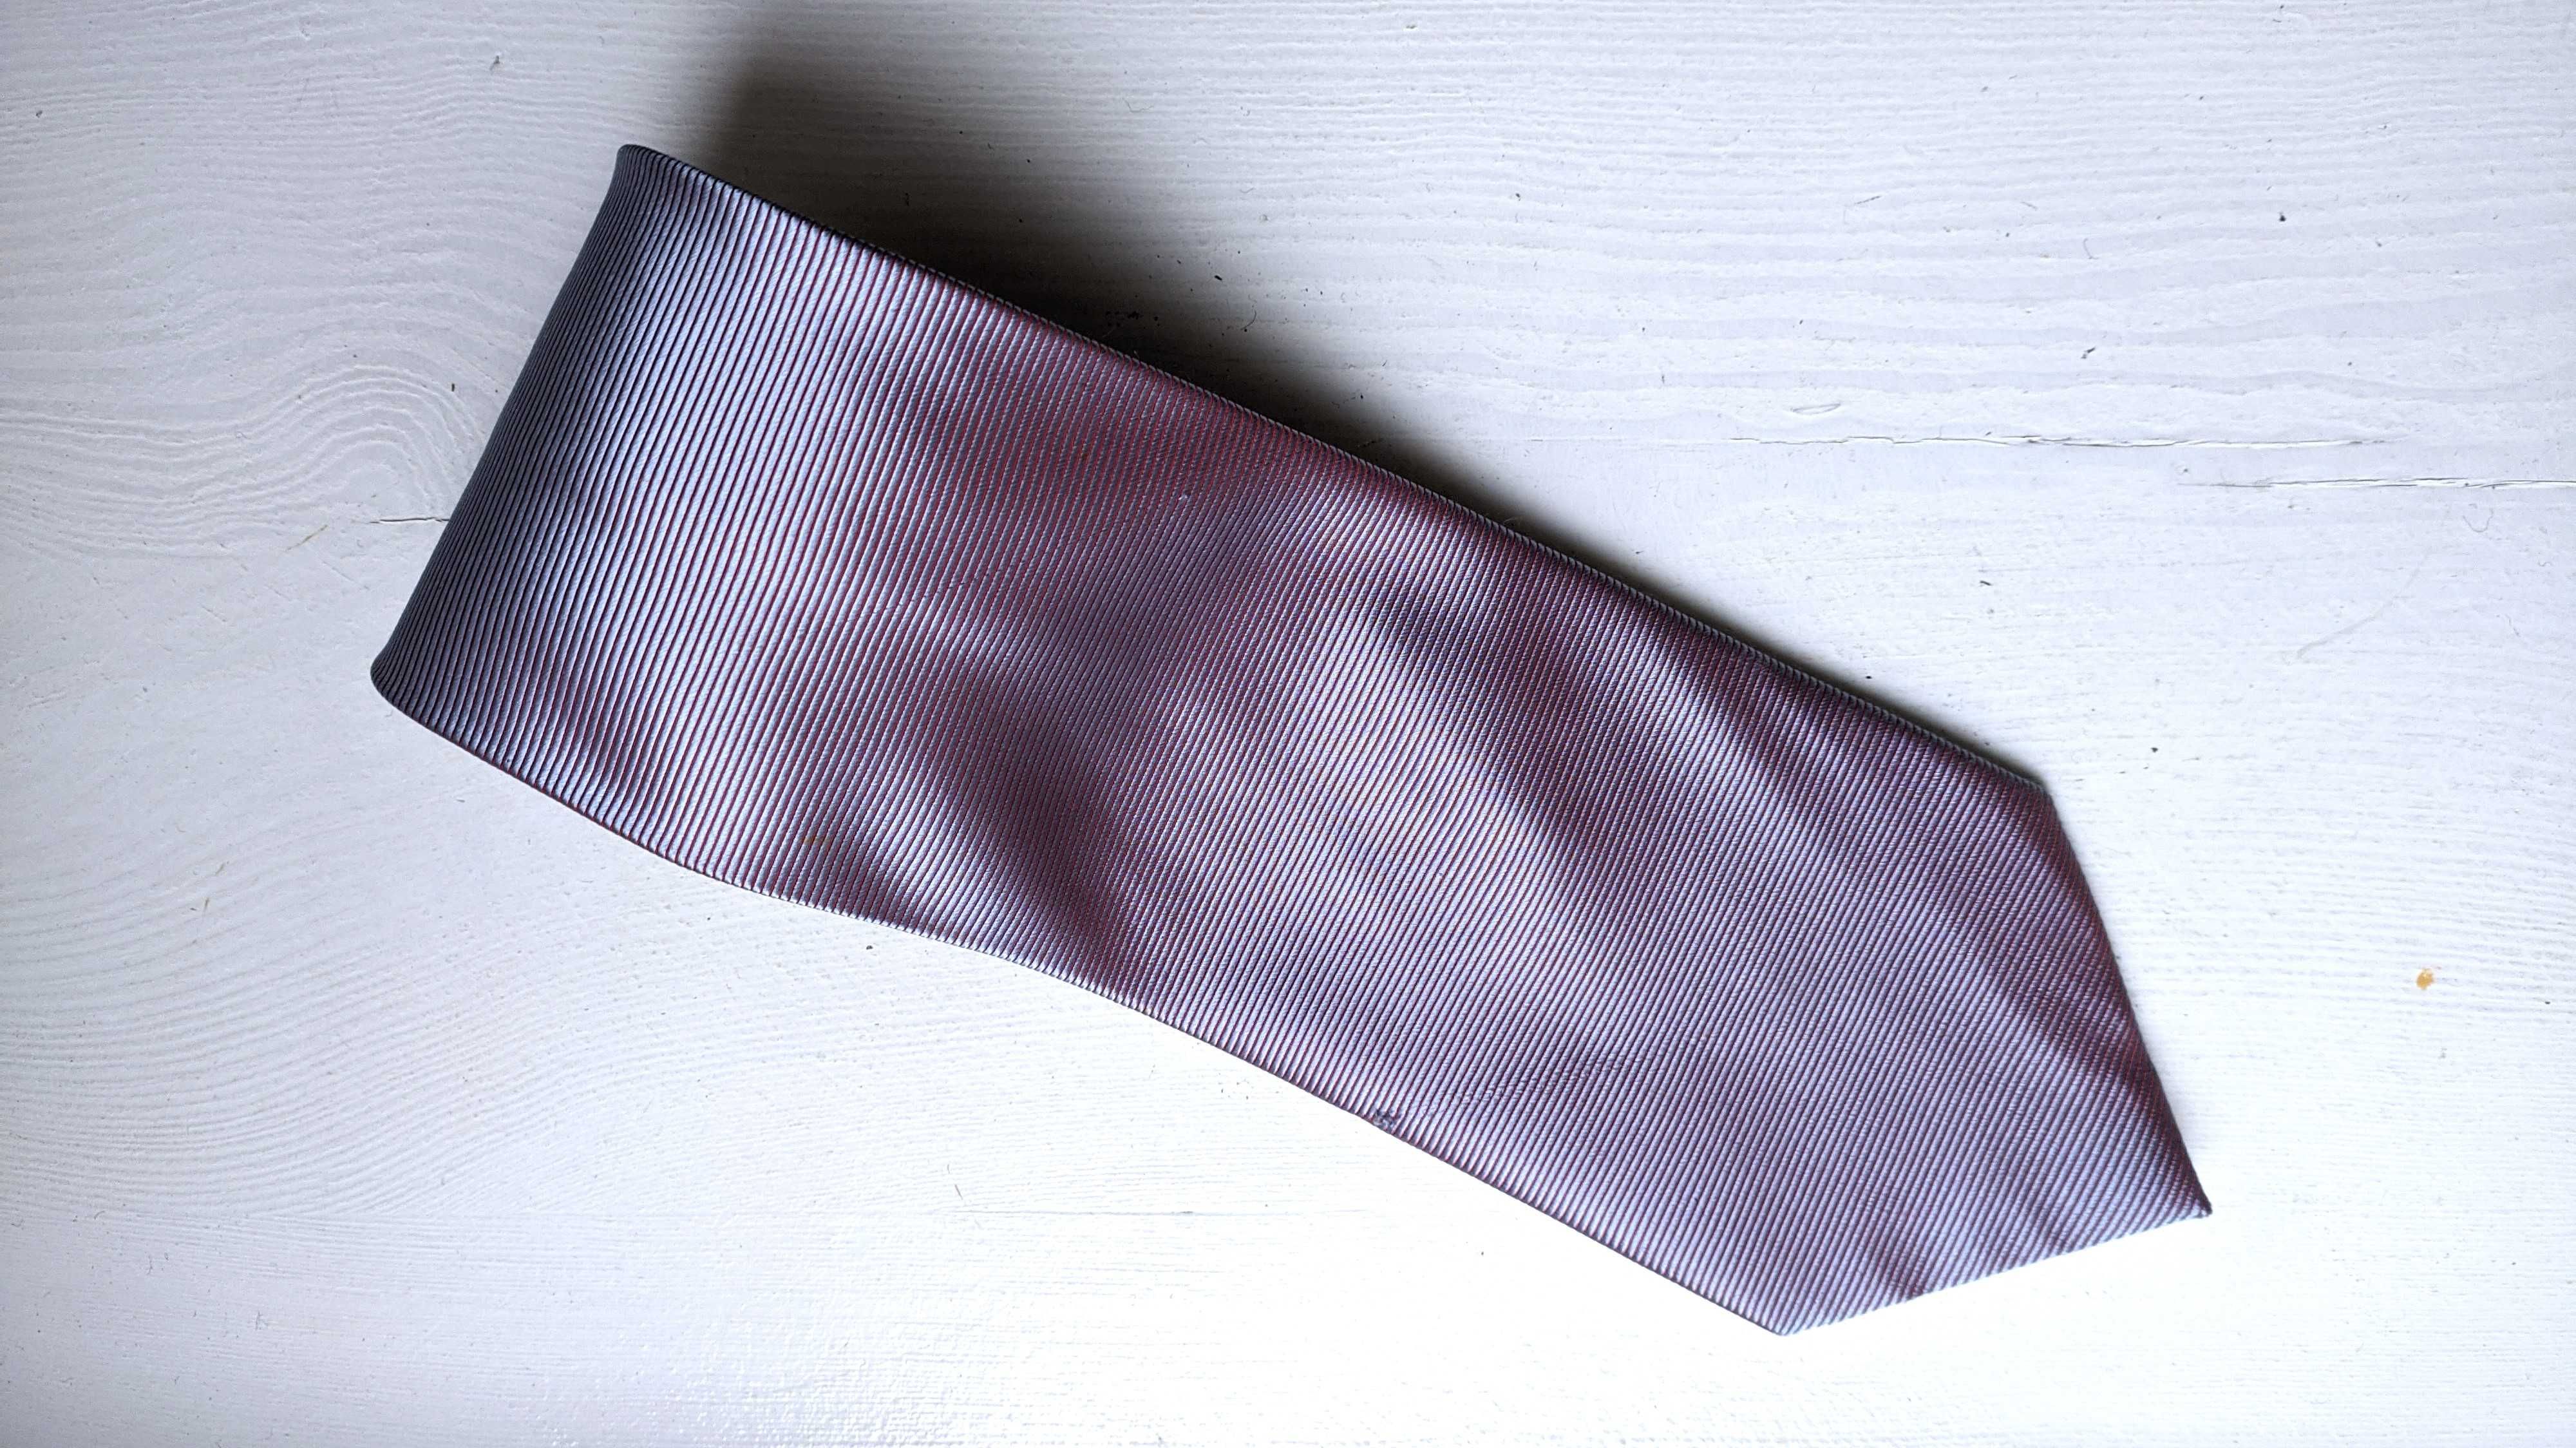 Jedwabny błękitno fioletowy krawat. Proo